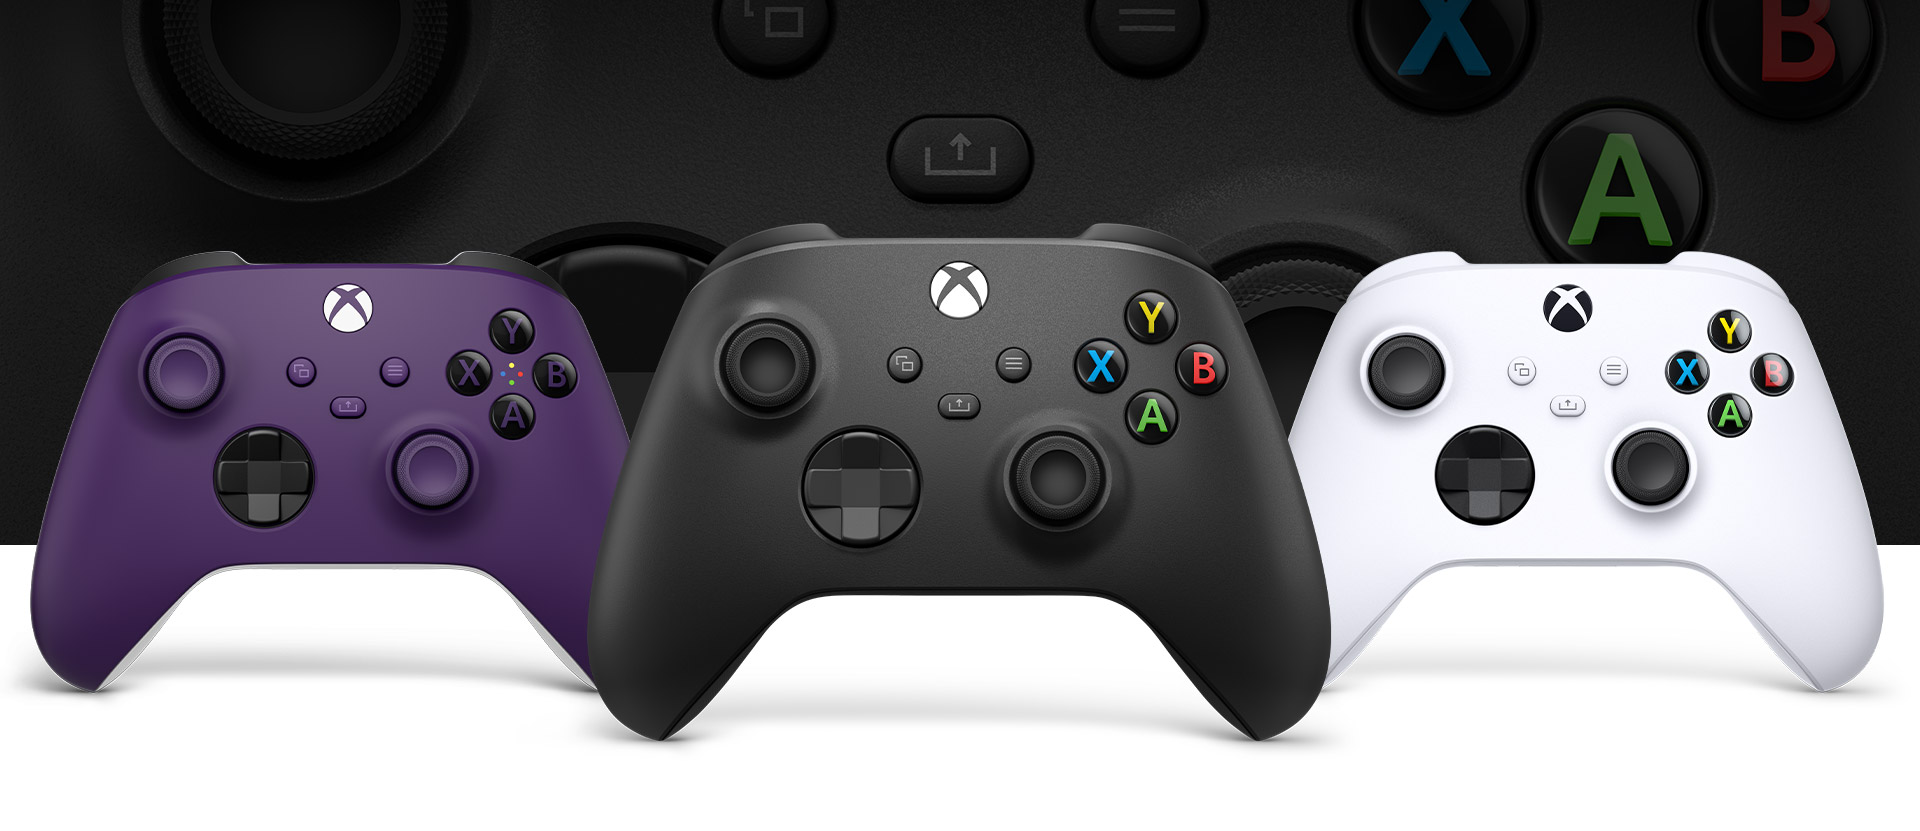 Xbox Carbon Black Controller im Vordergrund, Purple links daneben und Robot White rechts daneben